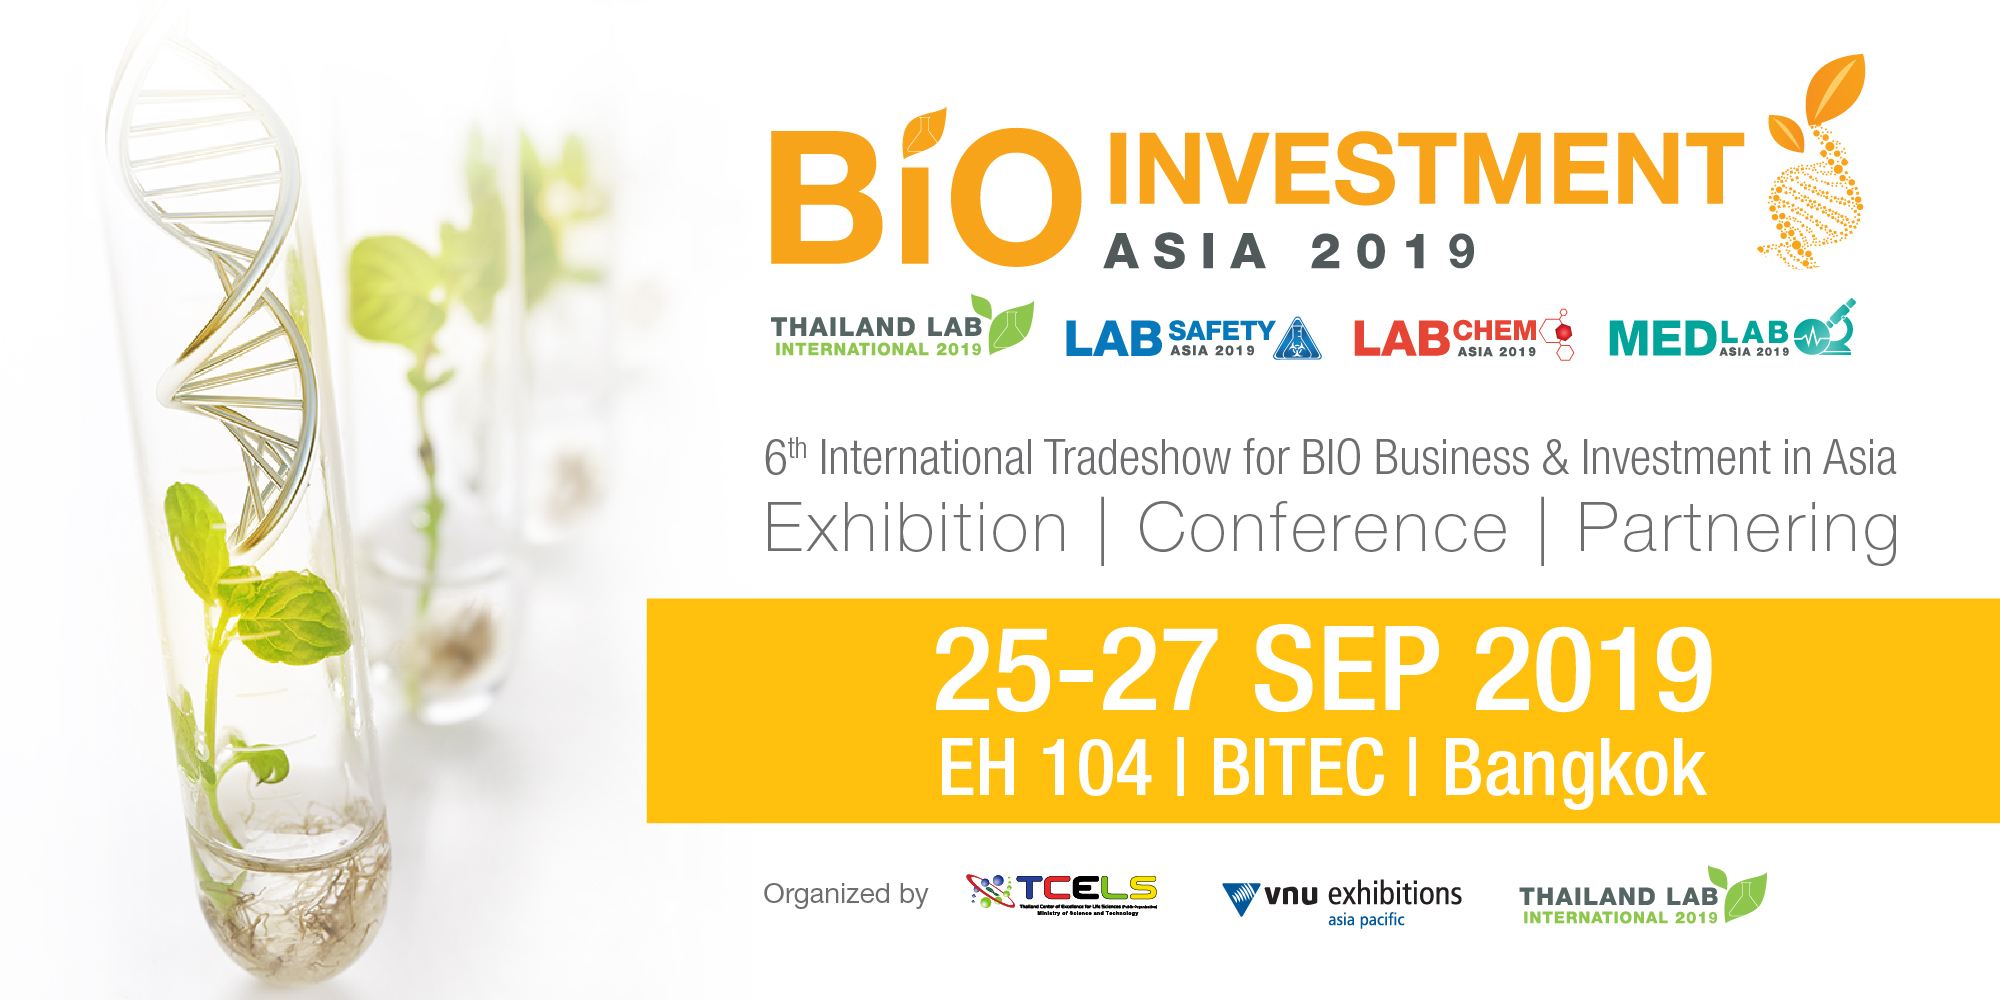 Bio Investment Asia 2019